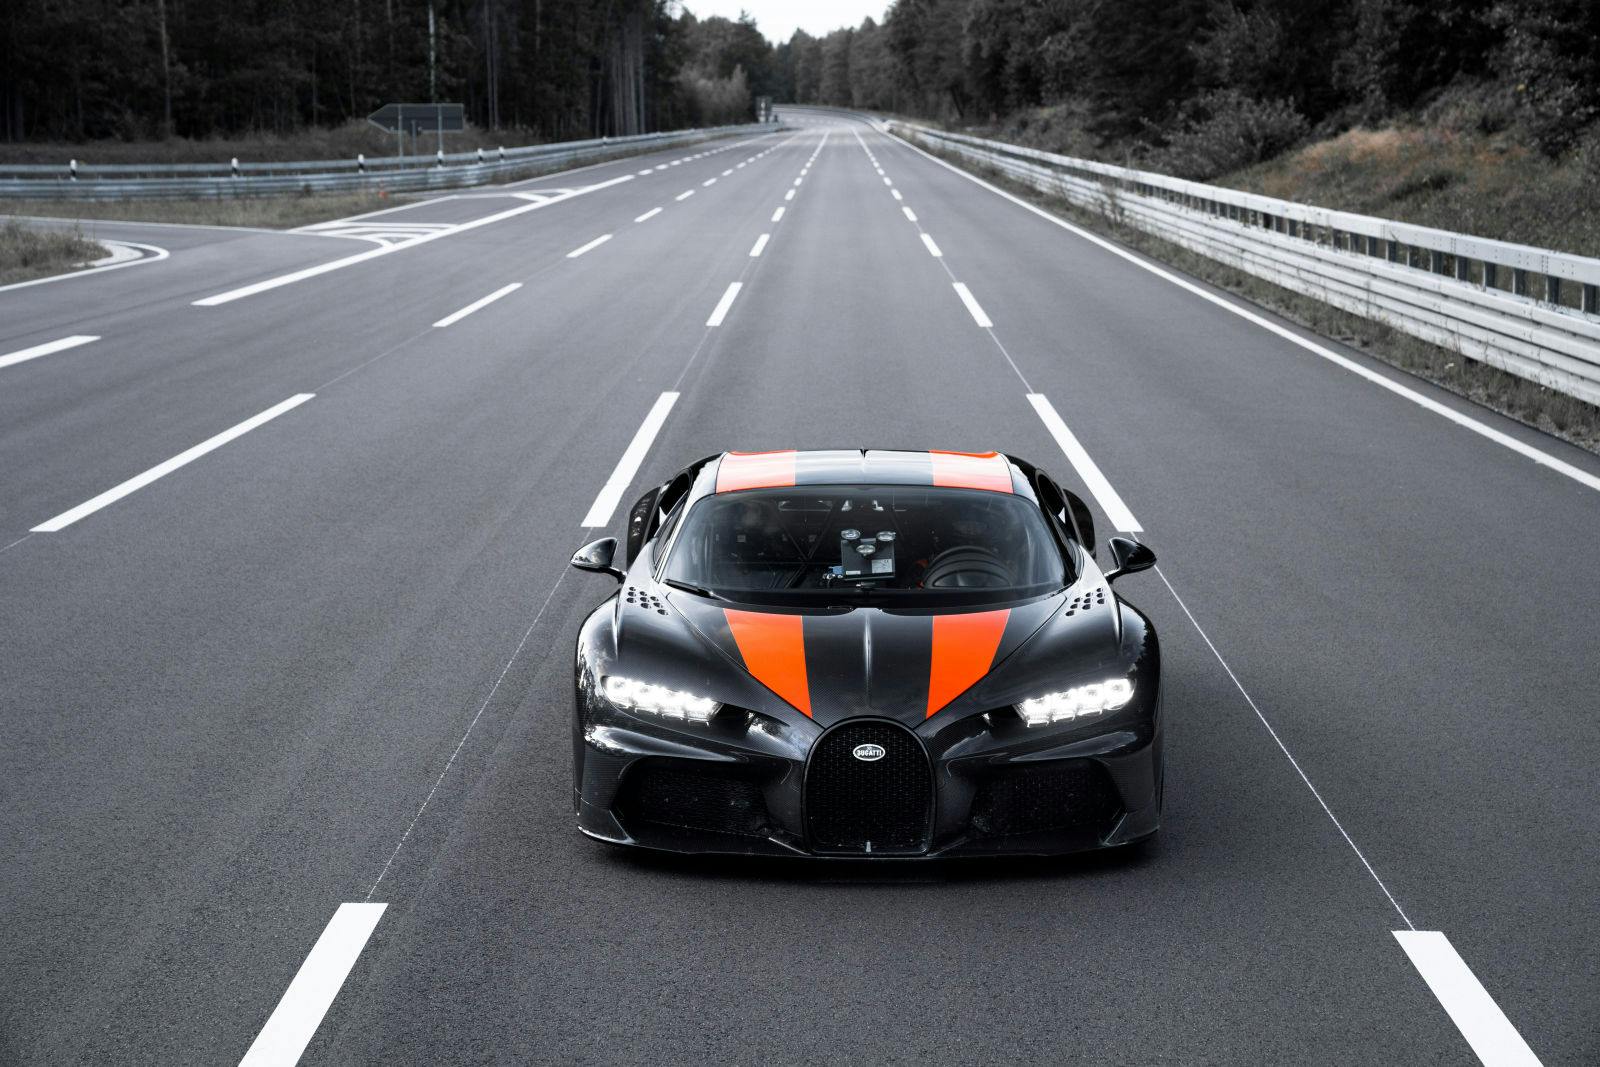 Derivé de la Bugatti Chiron (voiture pre-série), piste d’essai Ehra-Lessien